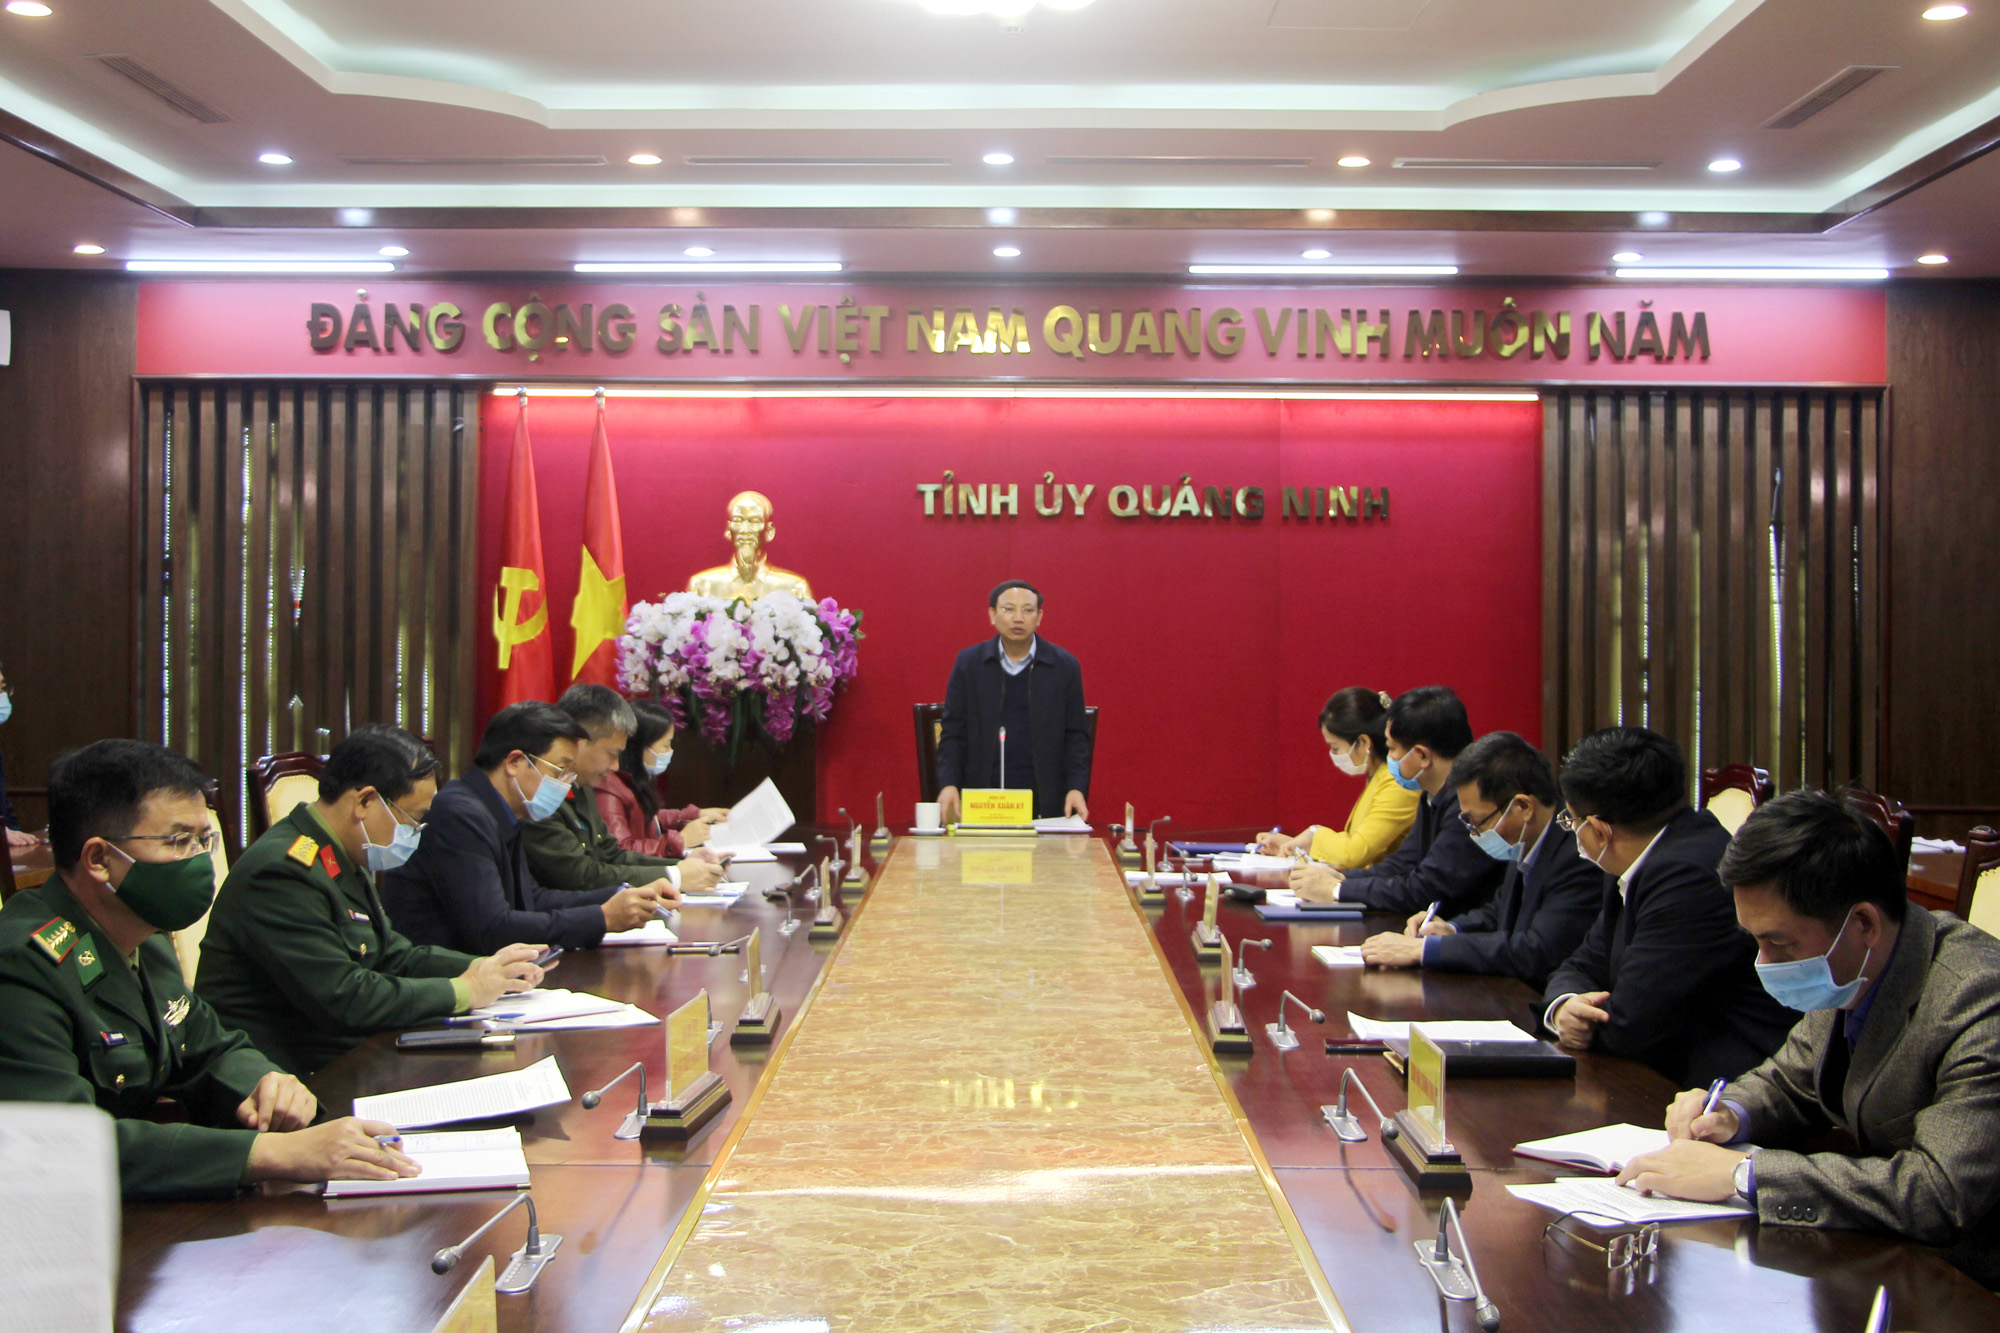 Đồng chí Nguyễn Xuân Ký, Bí thư Tỉnh ủy, Chủ tịch HĐND tỉnh kết luận cuộc họp.